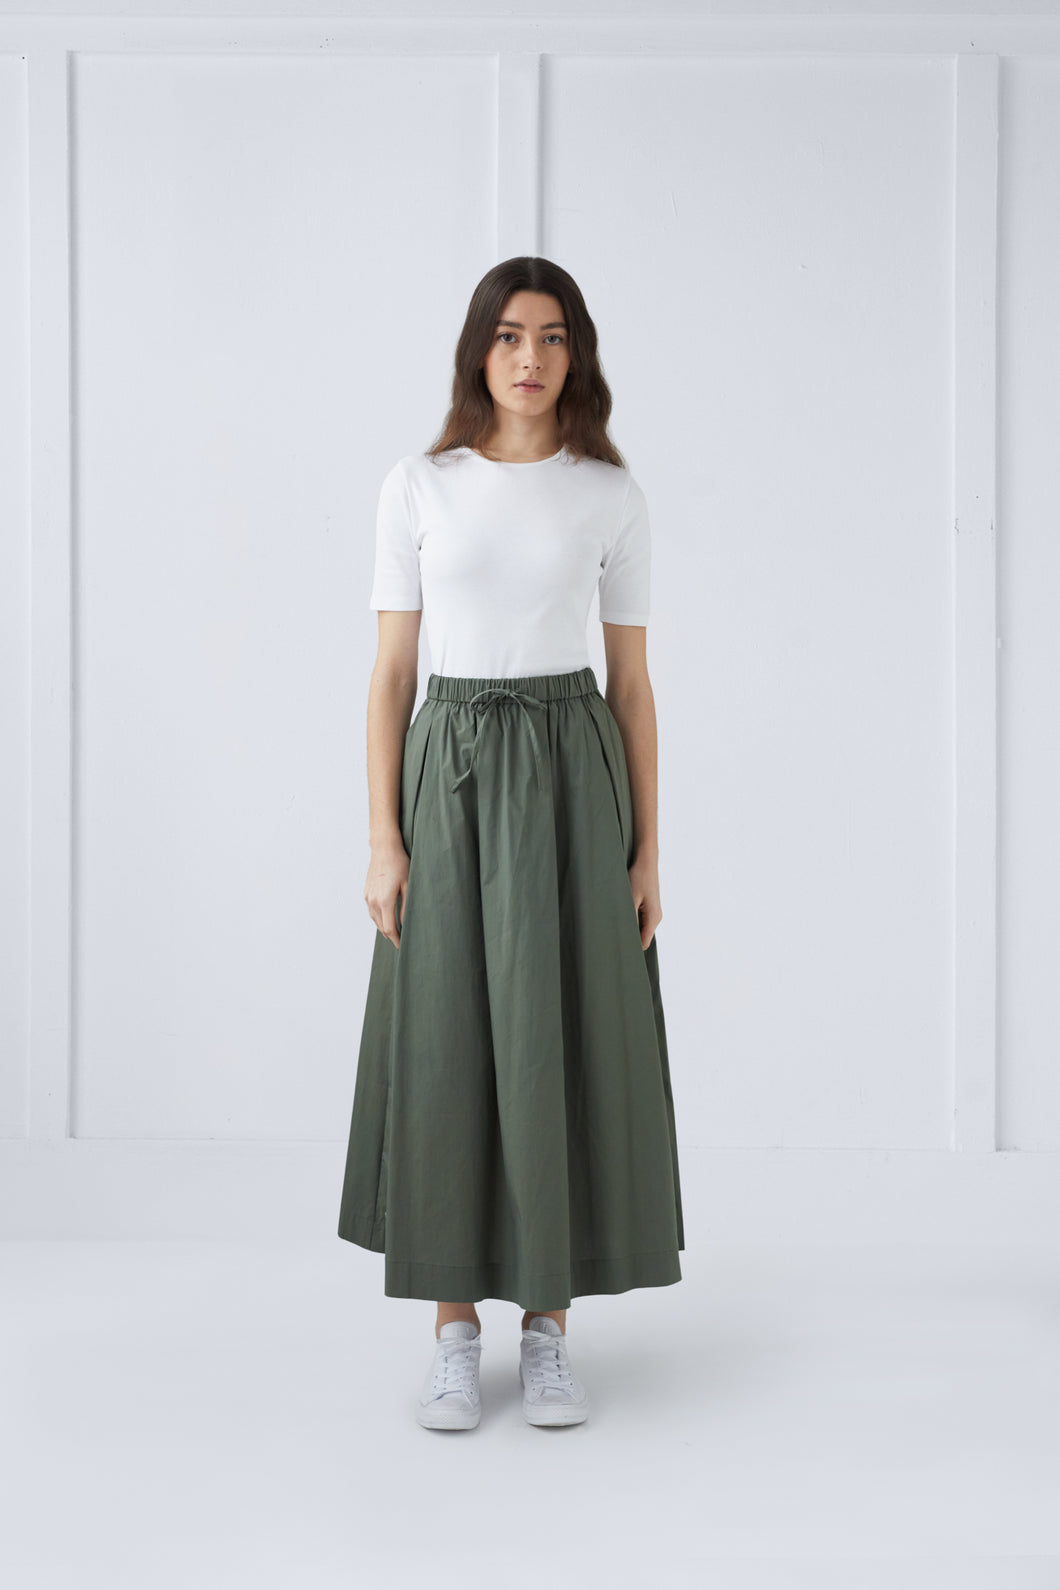 Green Maxi Skirt #1505